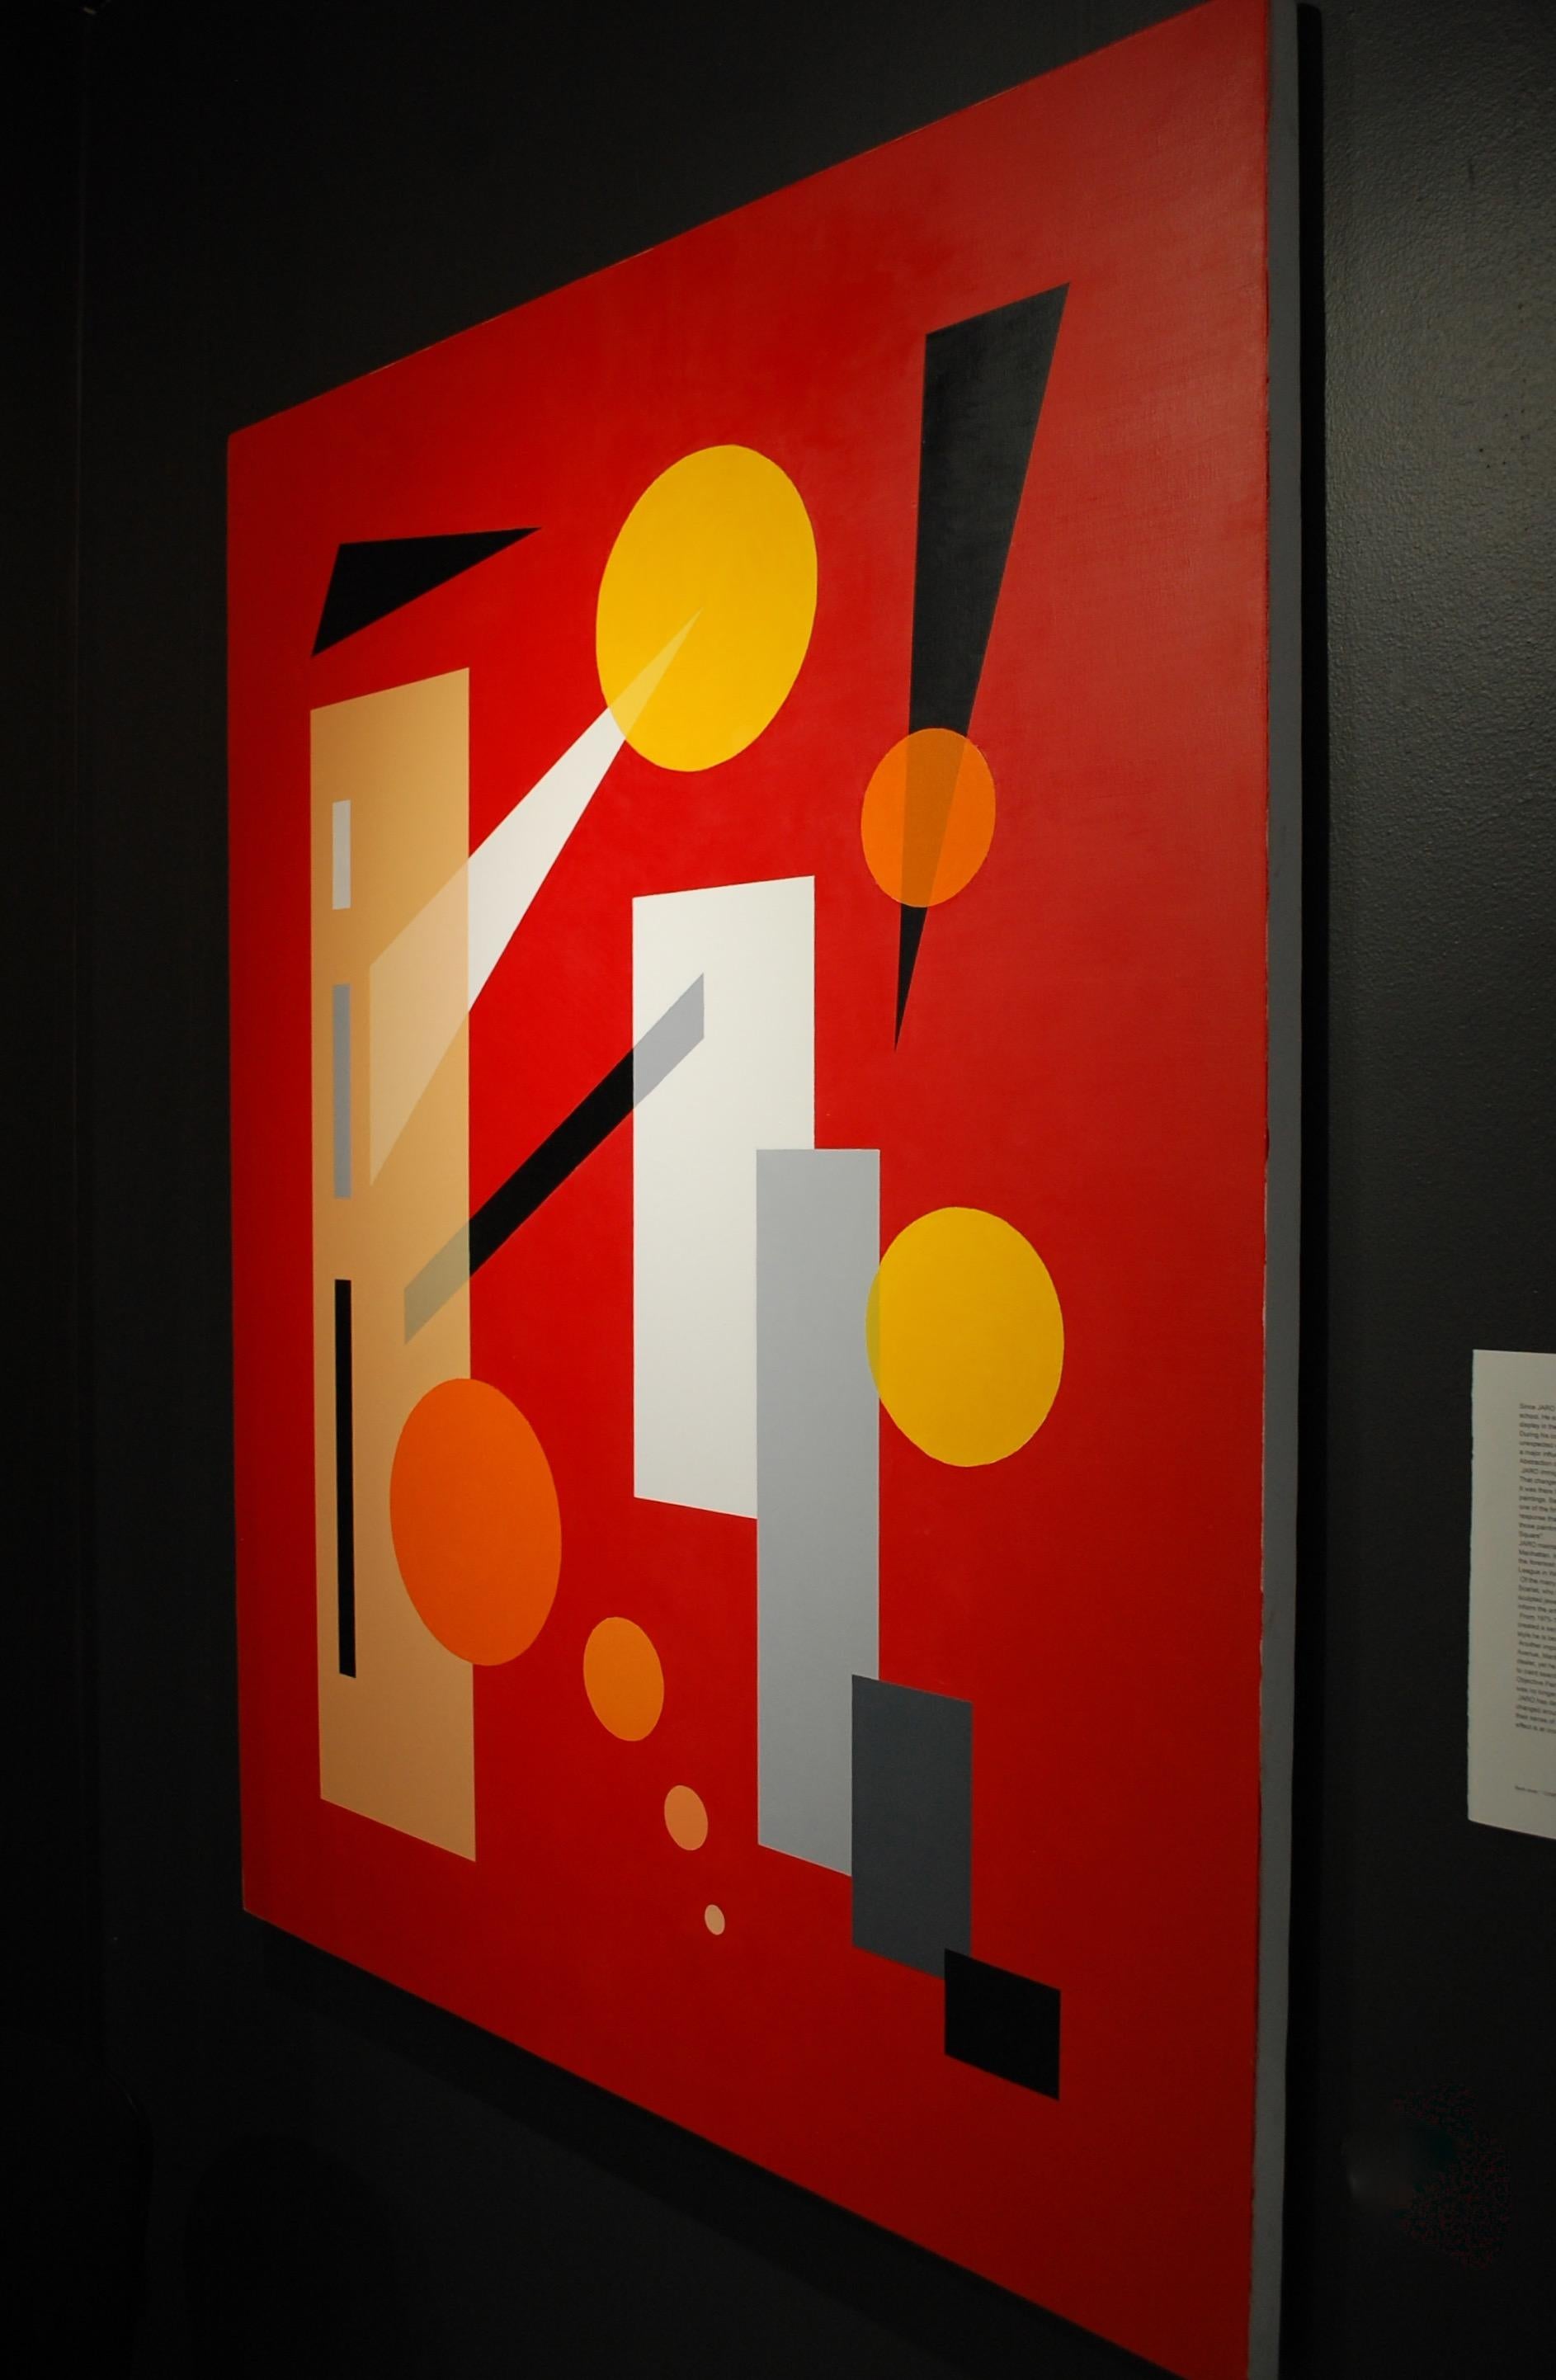 Abstrakte Universum-Komposition in Rot
Künstler signiert verso, Öl auf Leinwand 60hx48w
JARO wurde 1934 in Prag in der Tschechischen Republik geboren. Seit seiner Kindheit genoss er den Kunstunterricht in der Schule am meisten. Fast jede Zeichnung